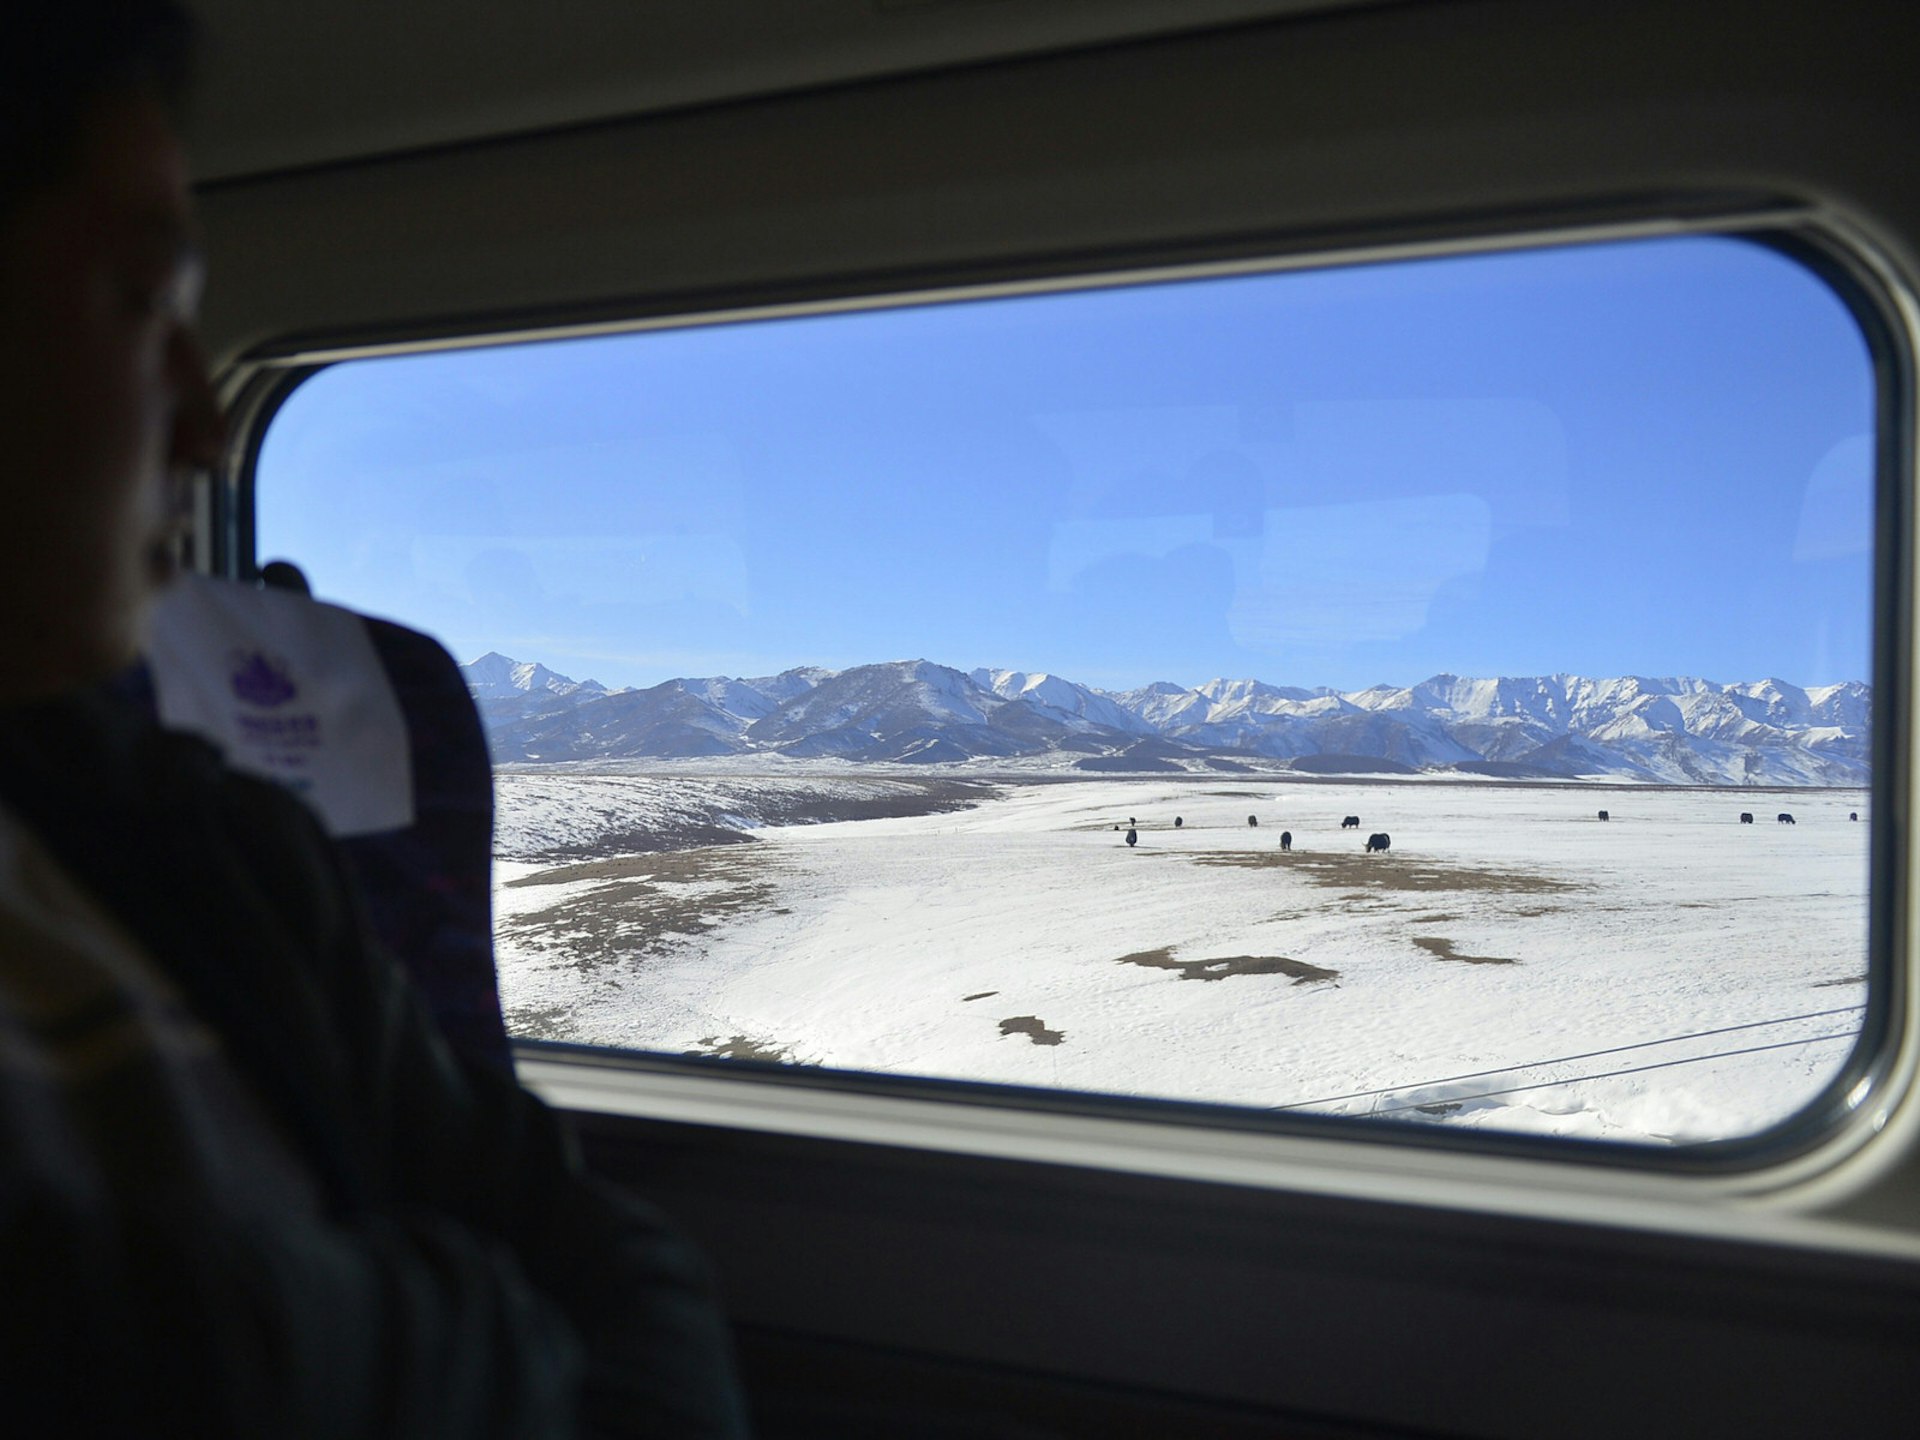 Gansu's epic scenery, best viewed through a train window © STR / Getty